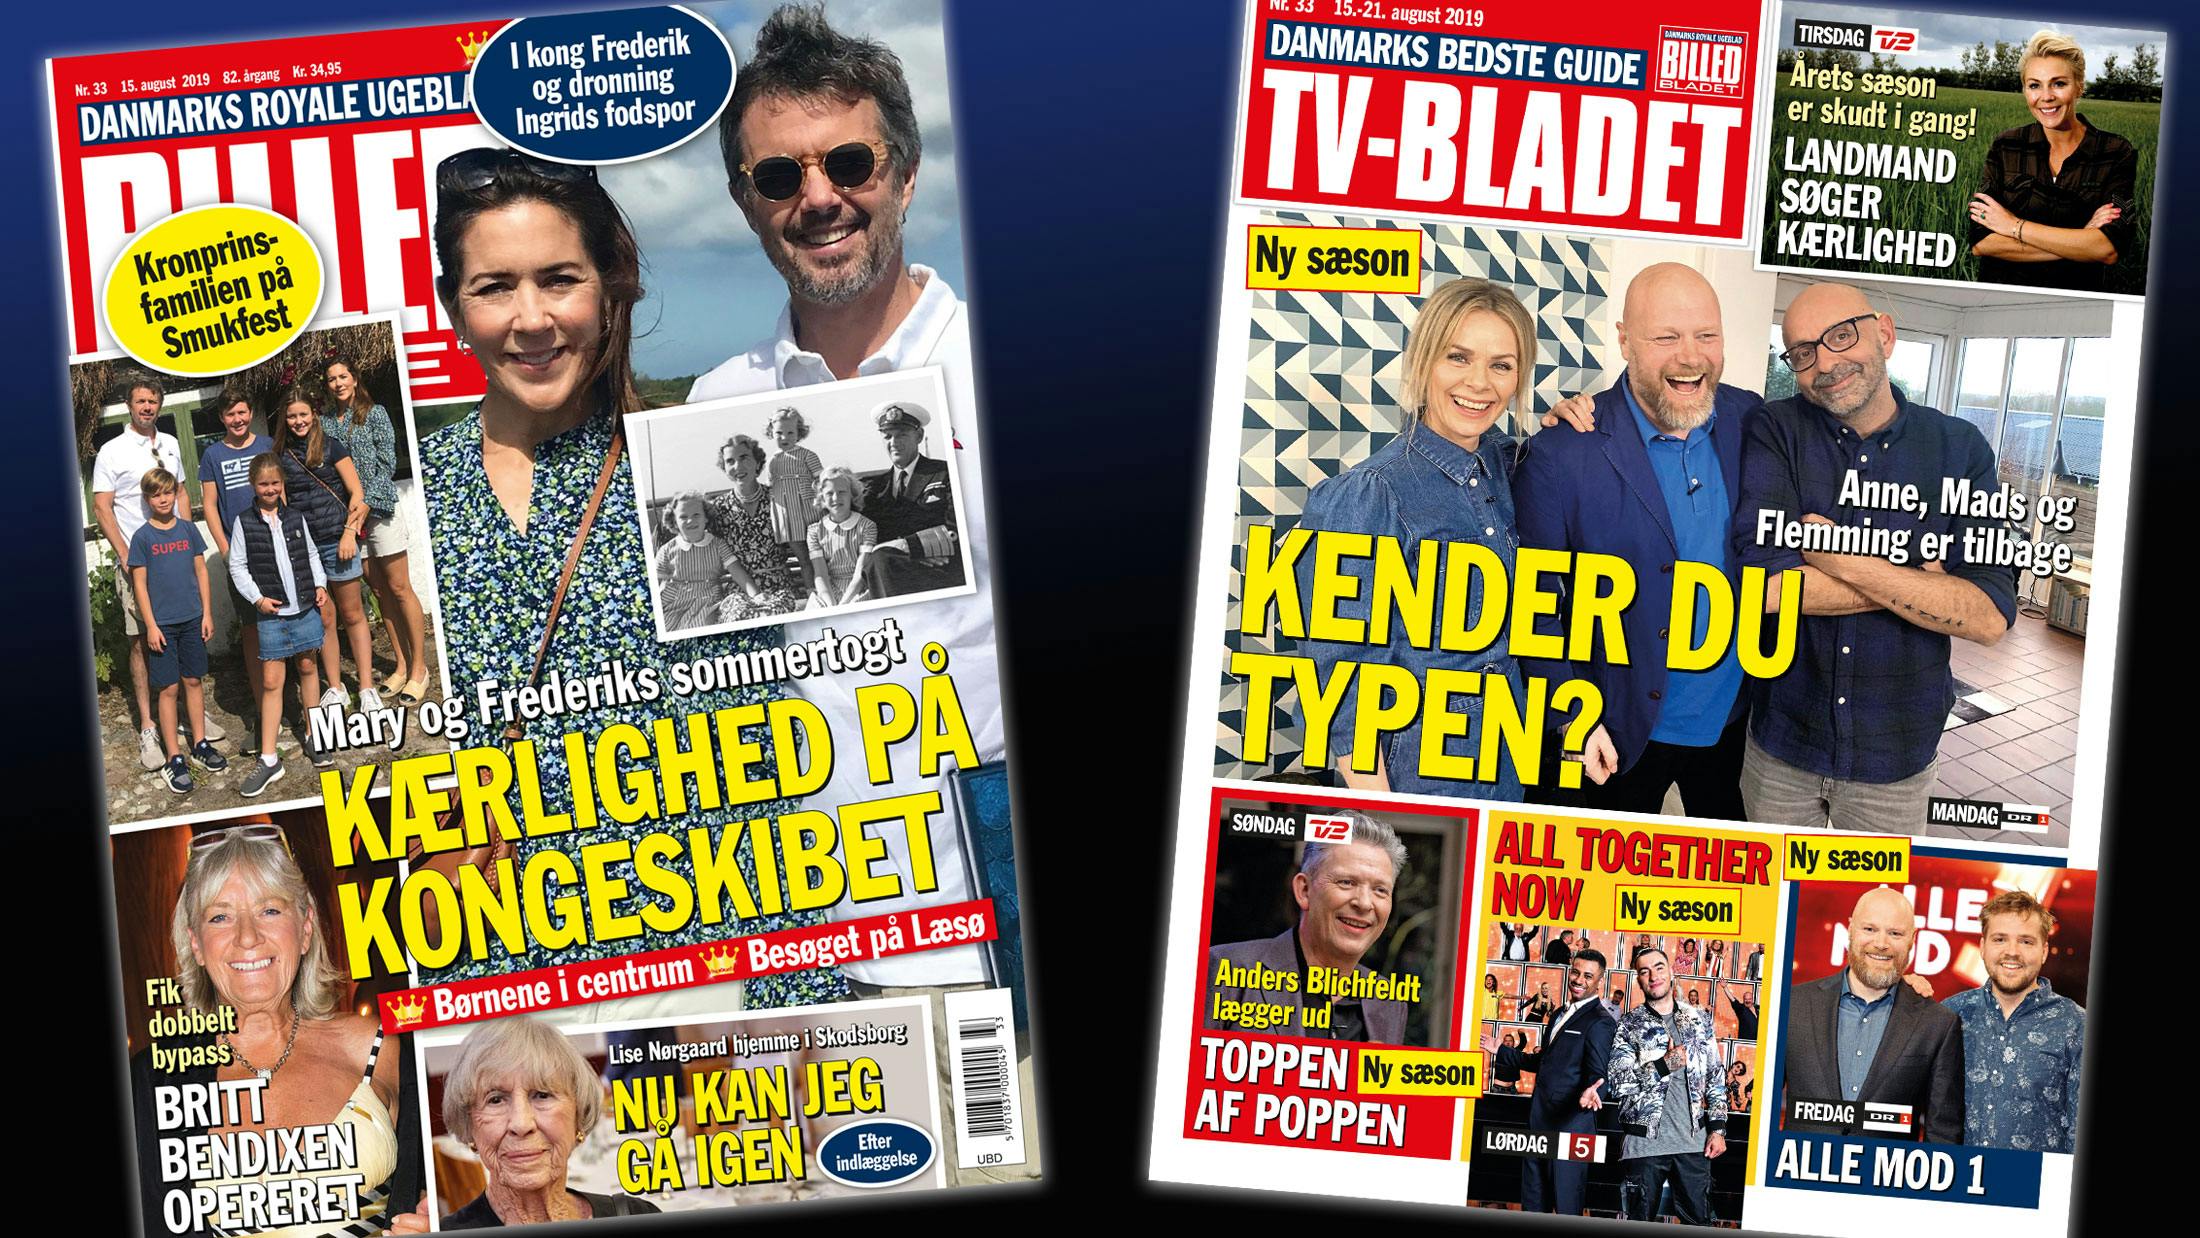 https://imgix.billedbladet.dk/storage_1/media/webgrafik_bb33-forsider.jpg